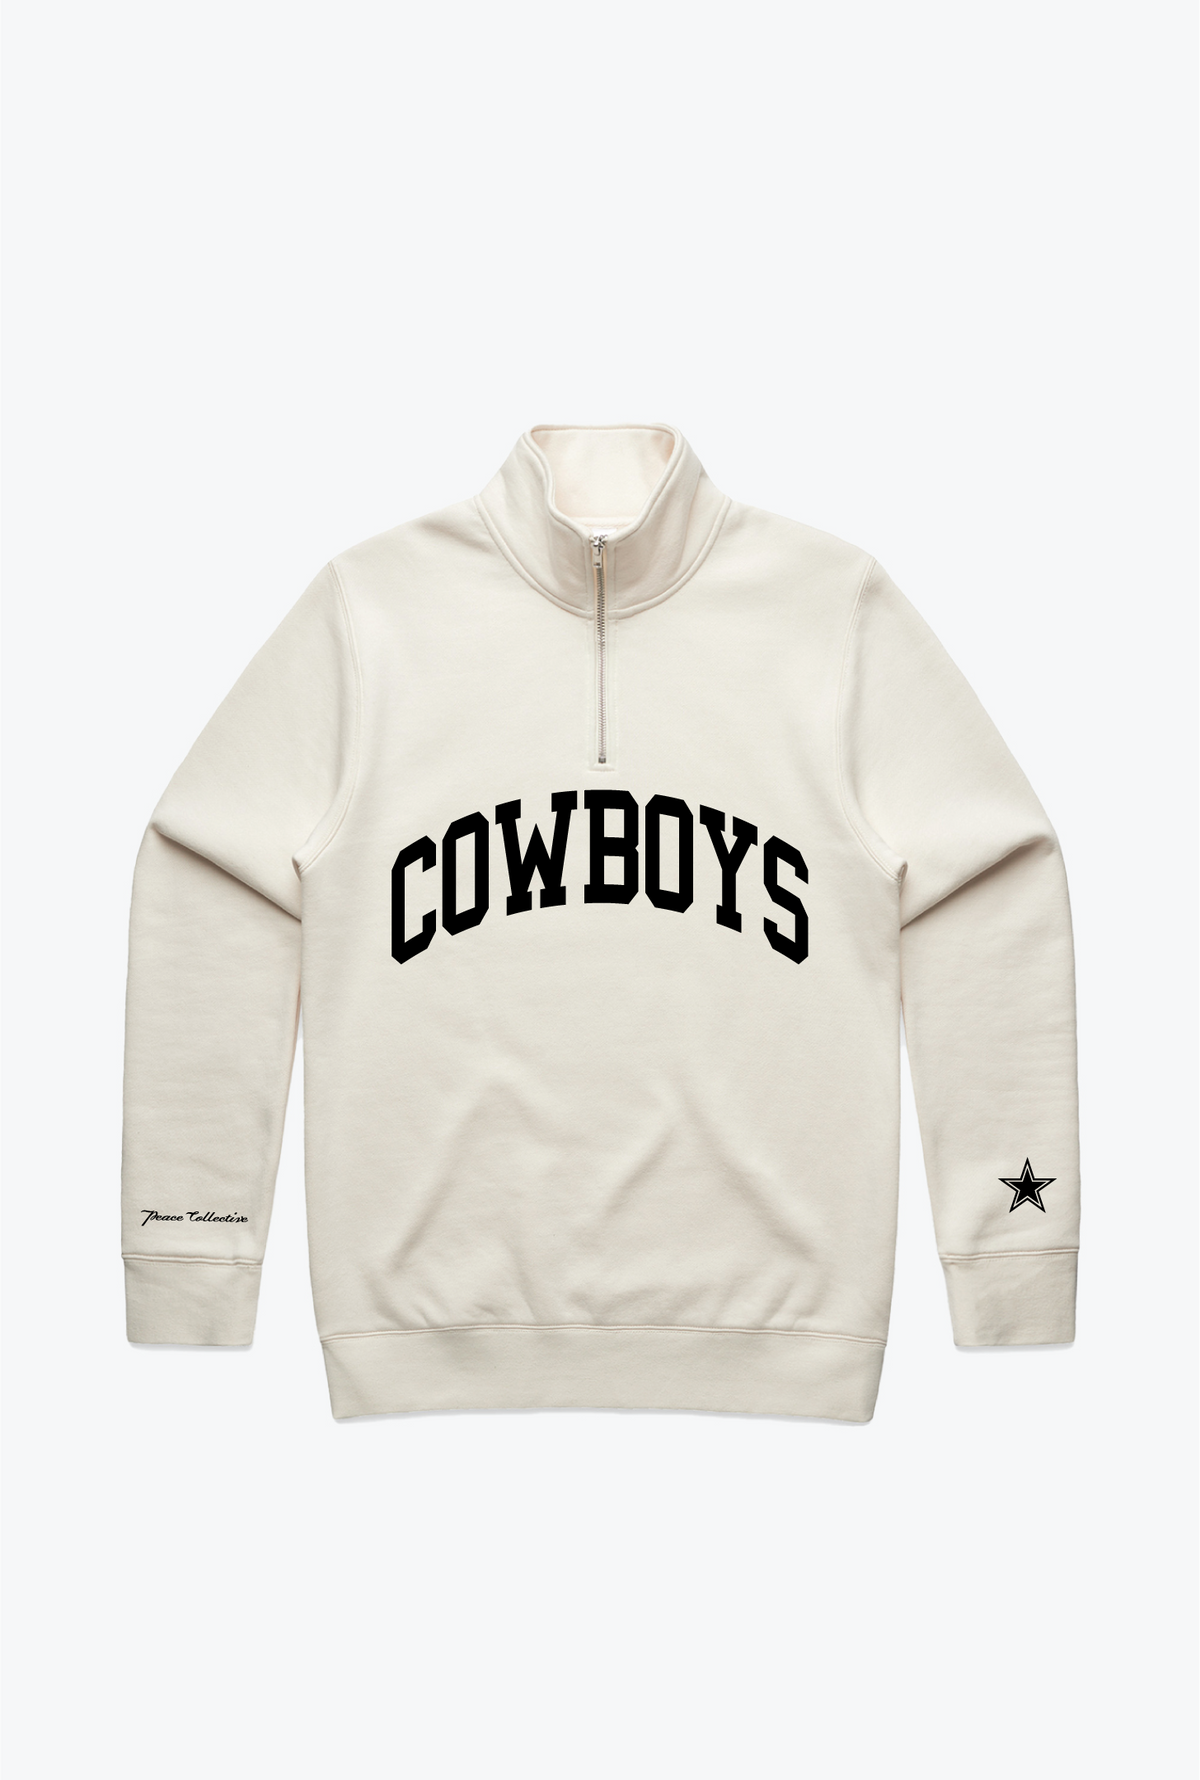 Dallas Cowboys Collegiate Quarter Zip - Ivory